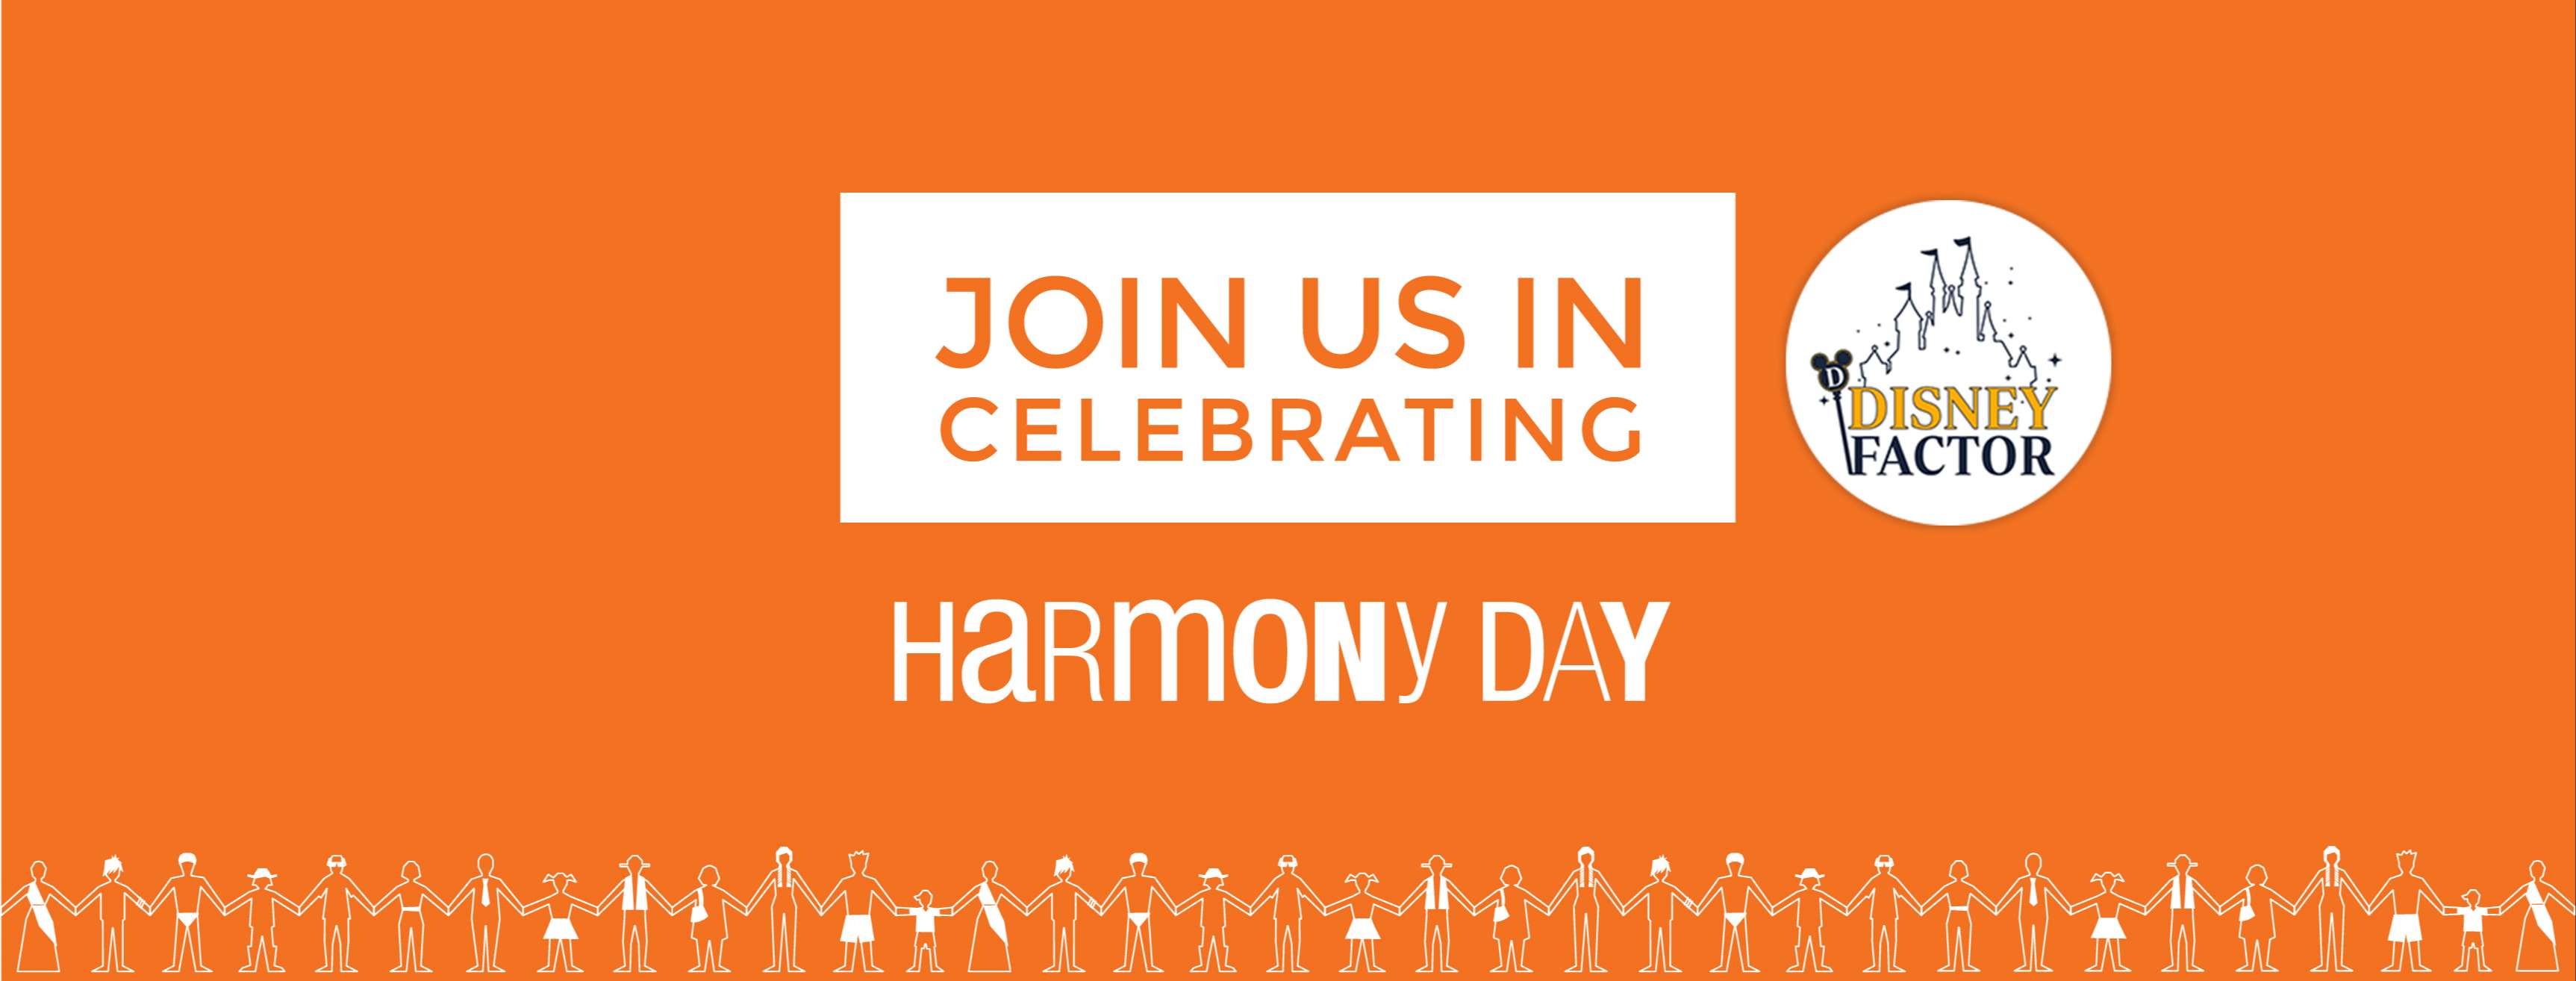 Celebrate Harmony Day in Style with This Stylish Orange Unisex T-Shirt